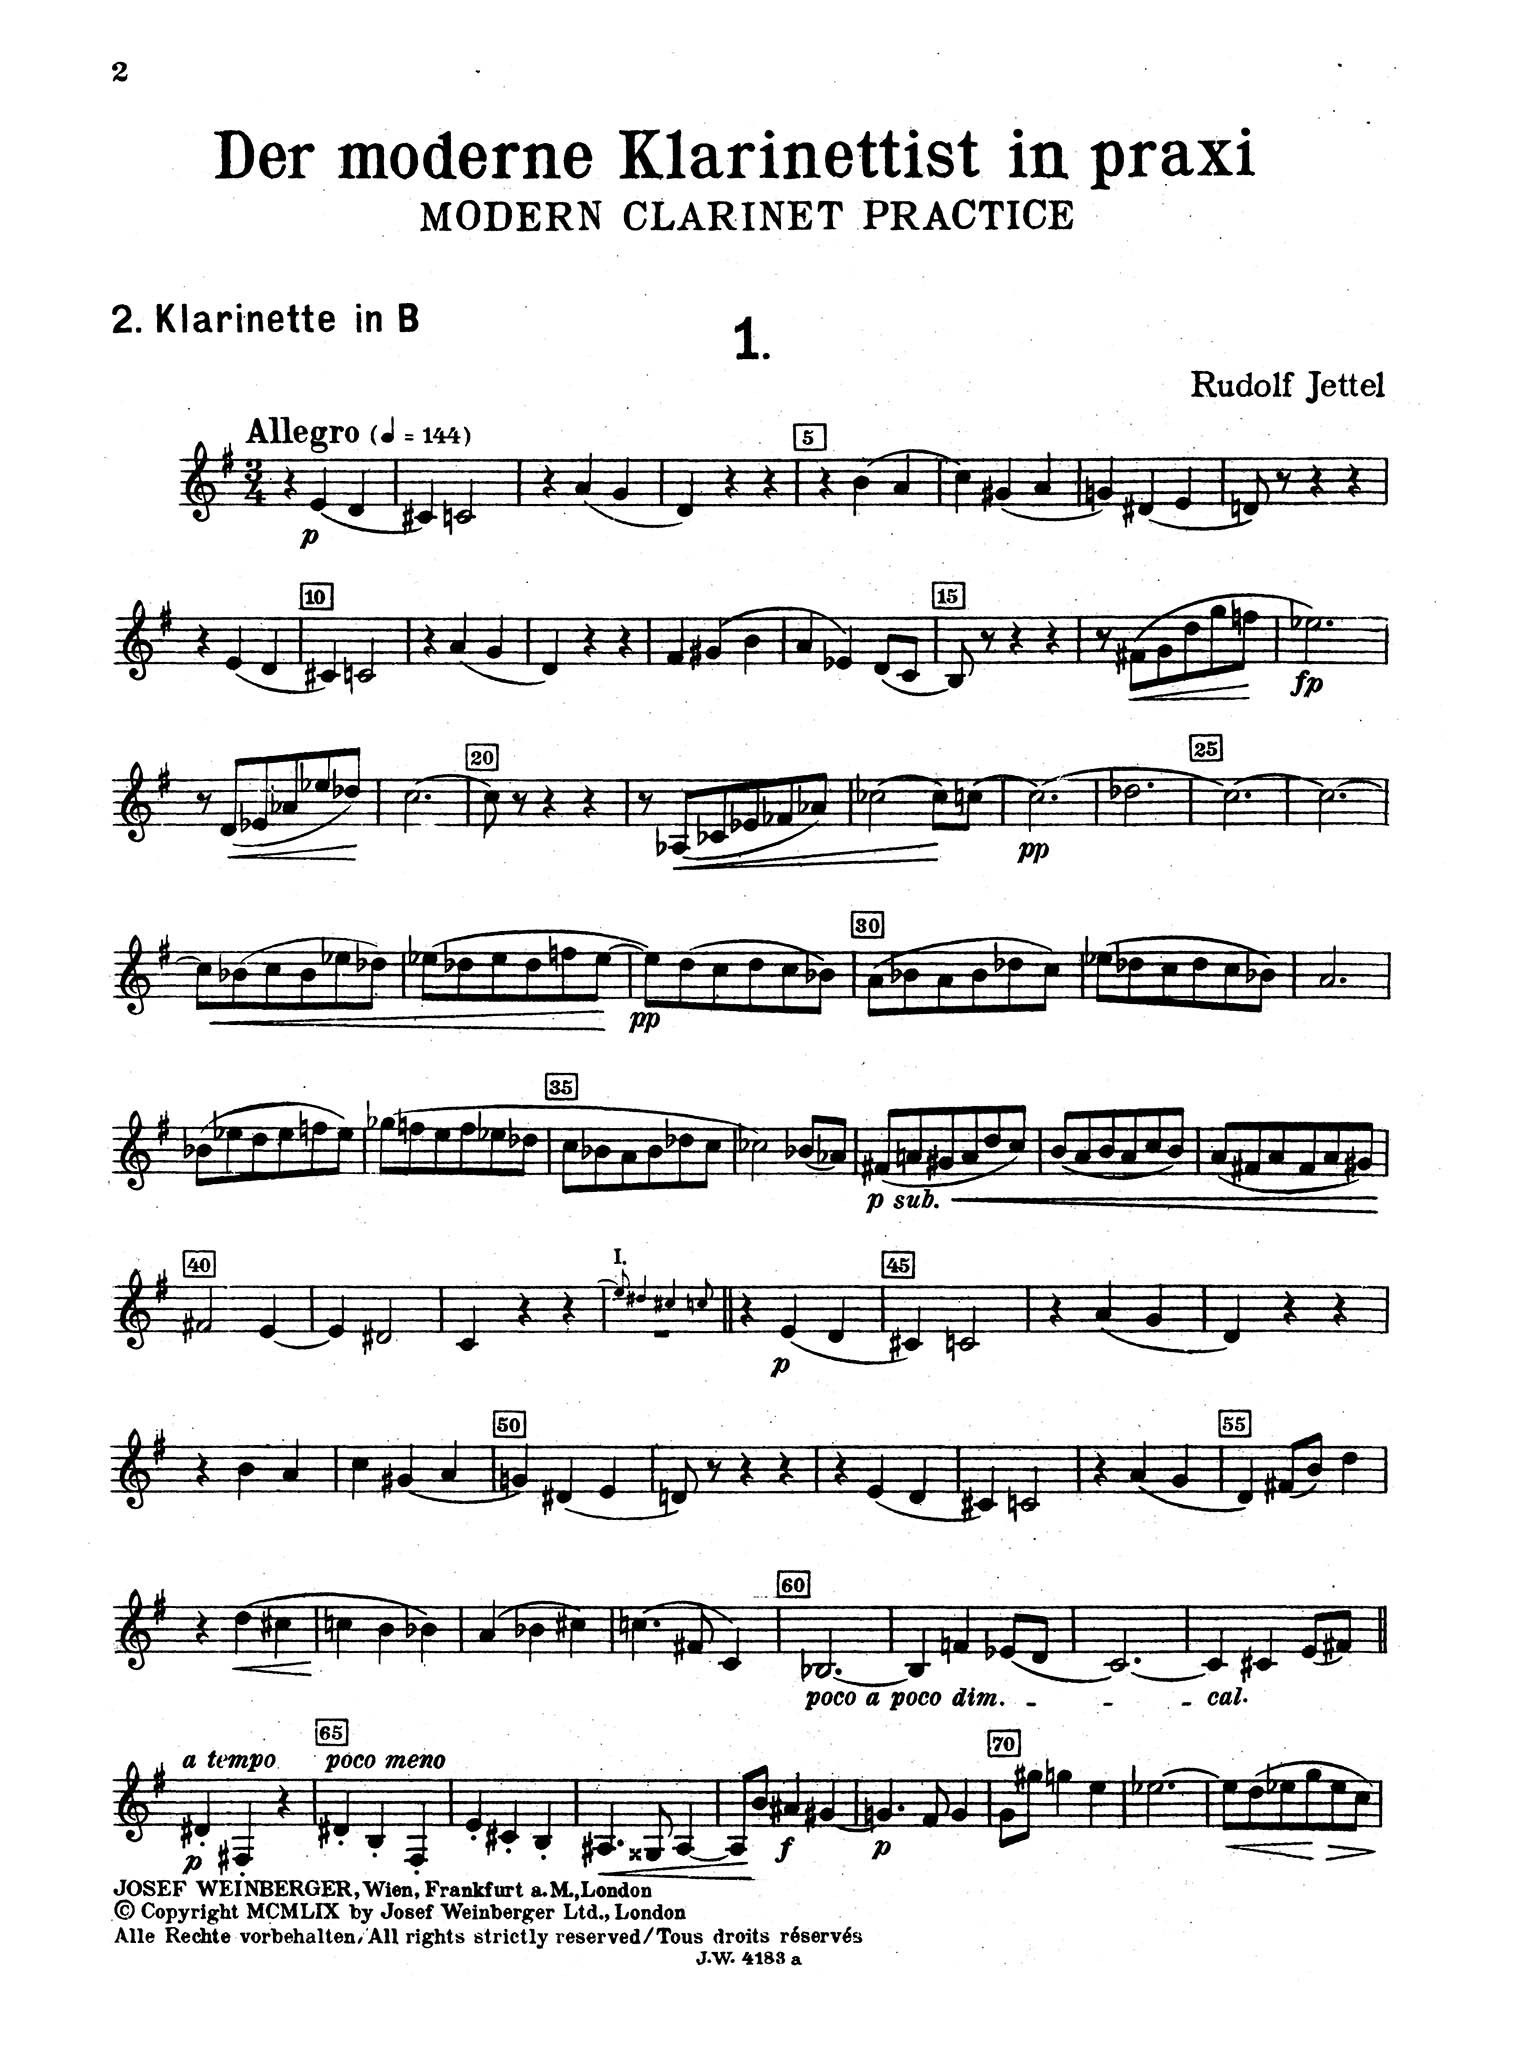 Modern Clarinet Practice, Book 1 Second Clarinet part